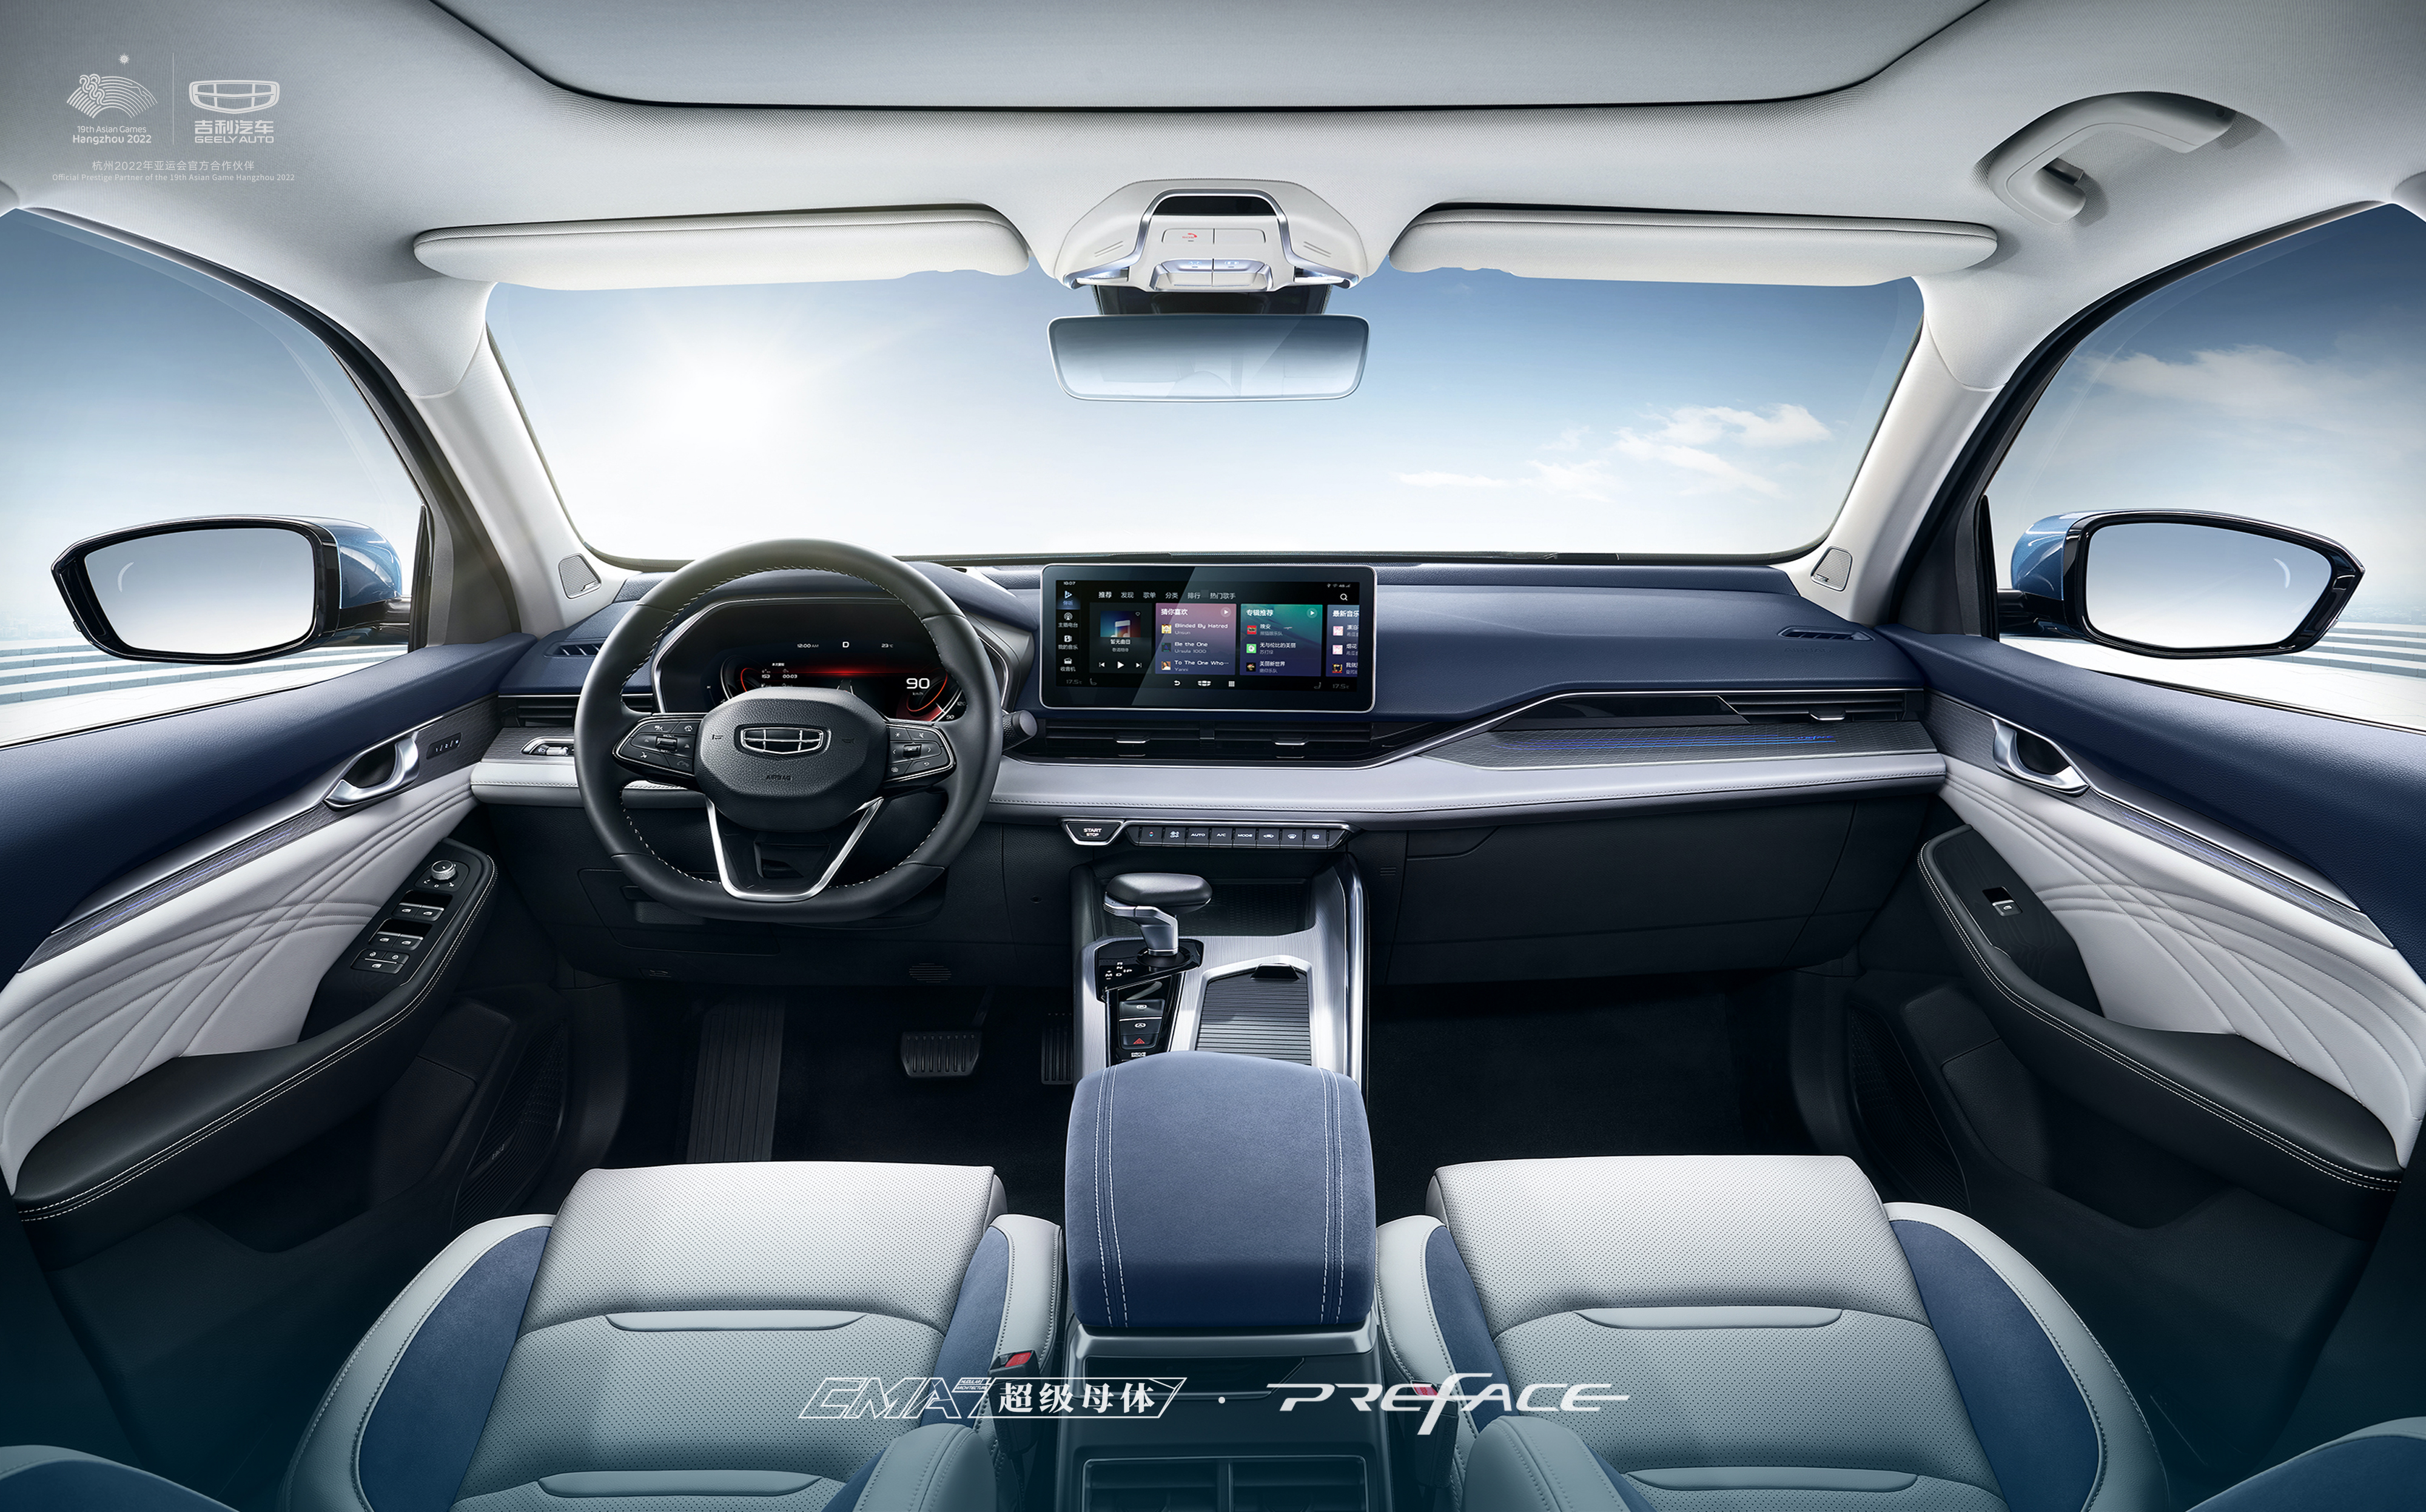 Đây là mẫu xe giành giải xe hơi của năm tại Trung Quốc geely-preface-interior-1.jpg